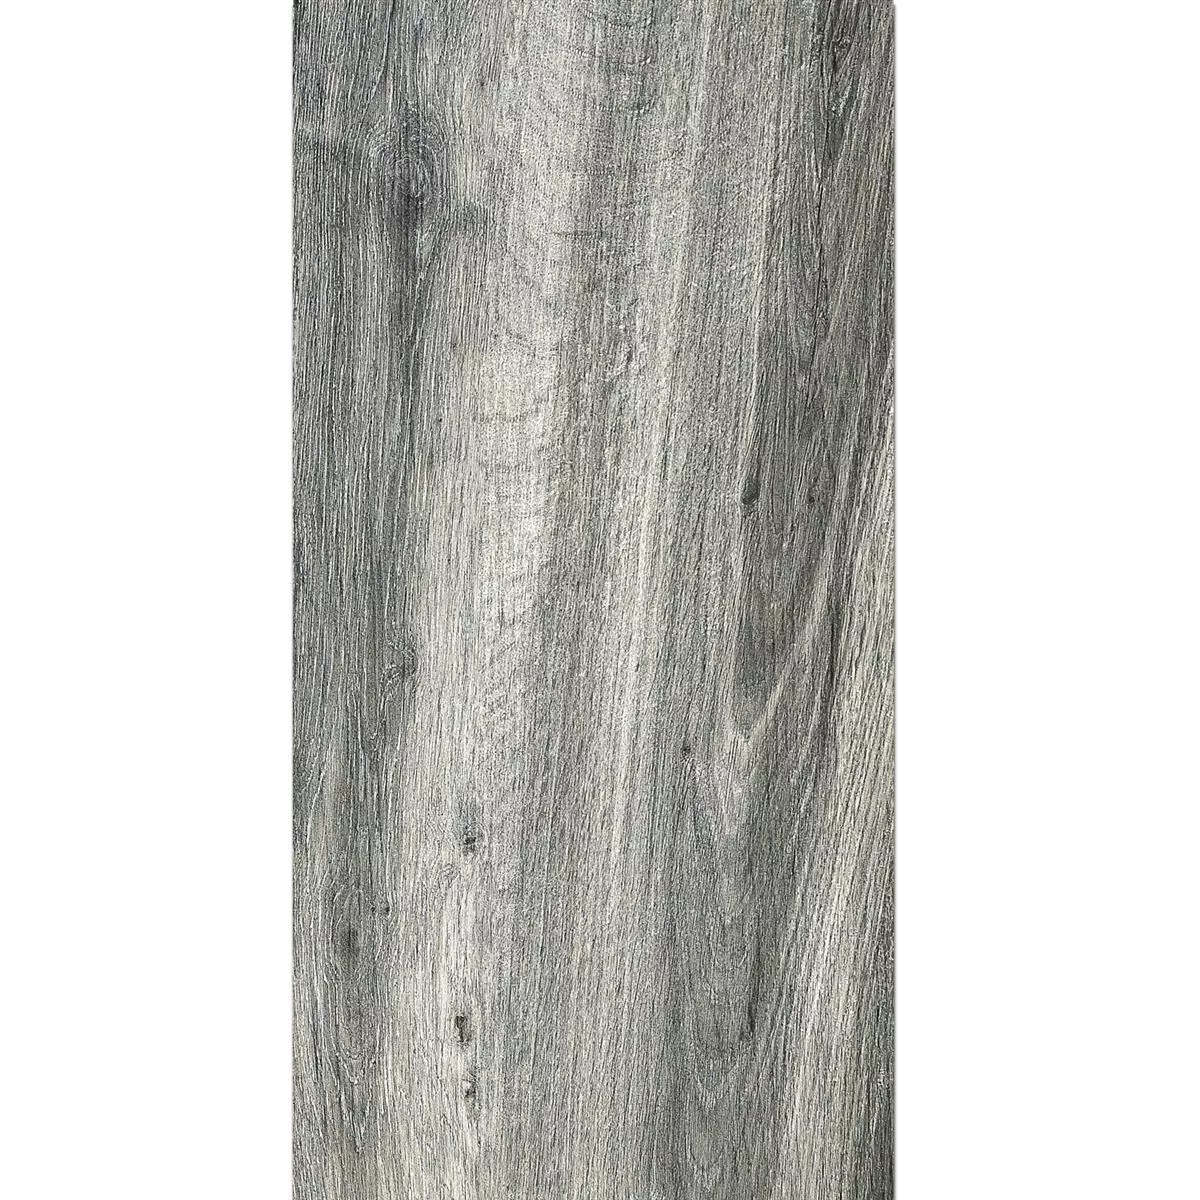 Kuvio Terassin Laatat Starwood Puinen Ilme Grey 45x90cm